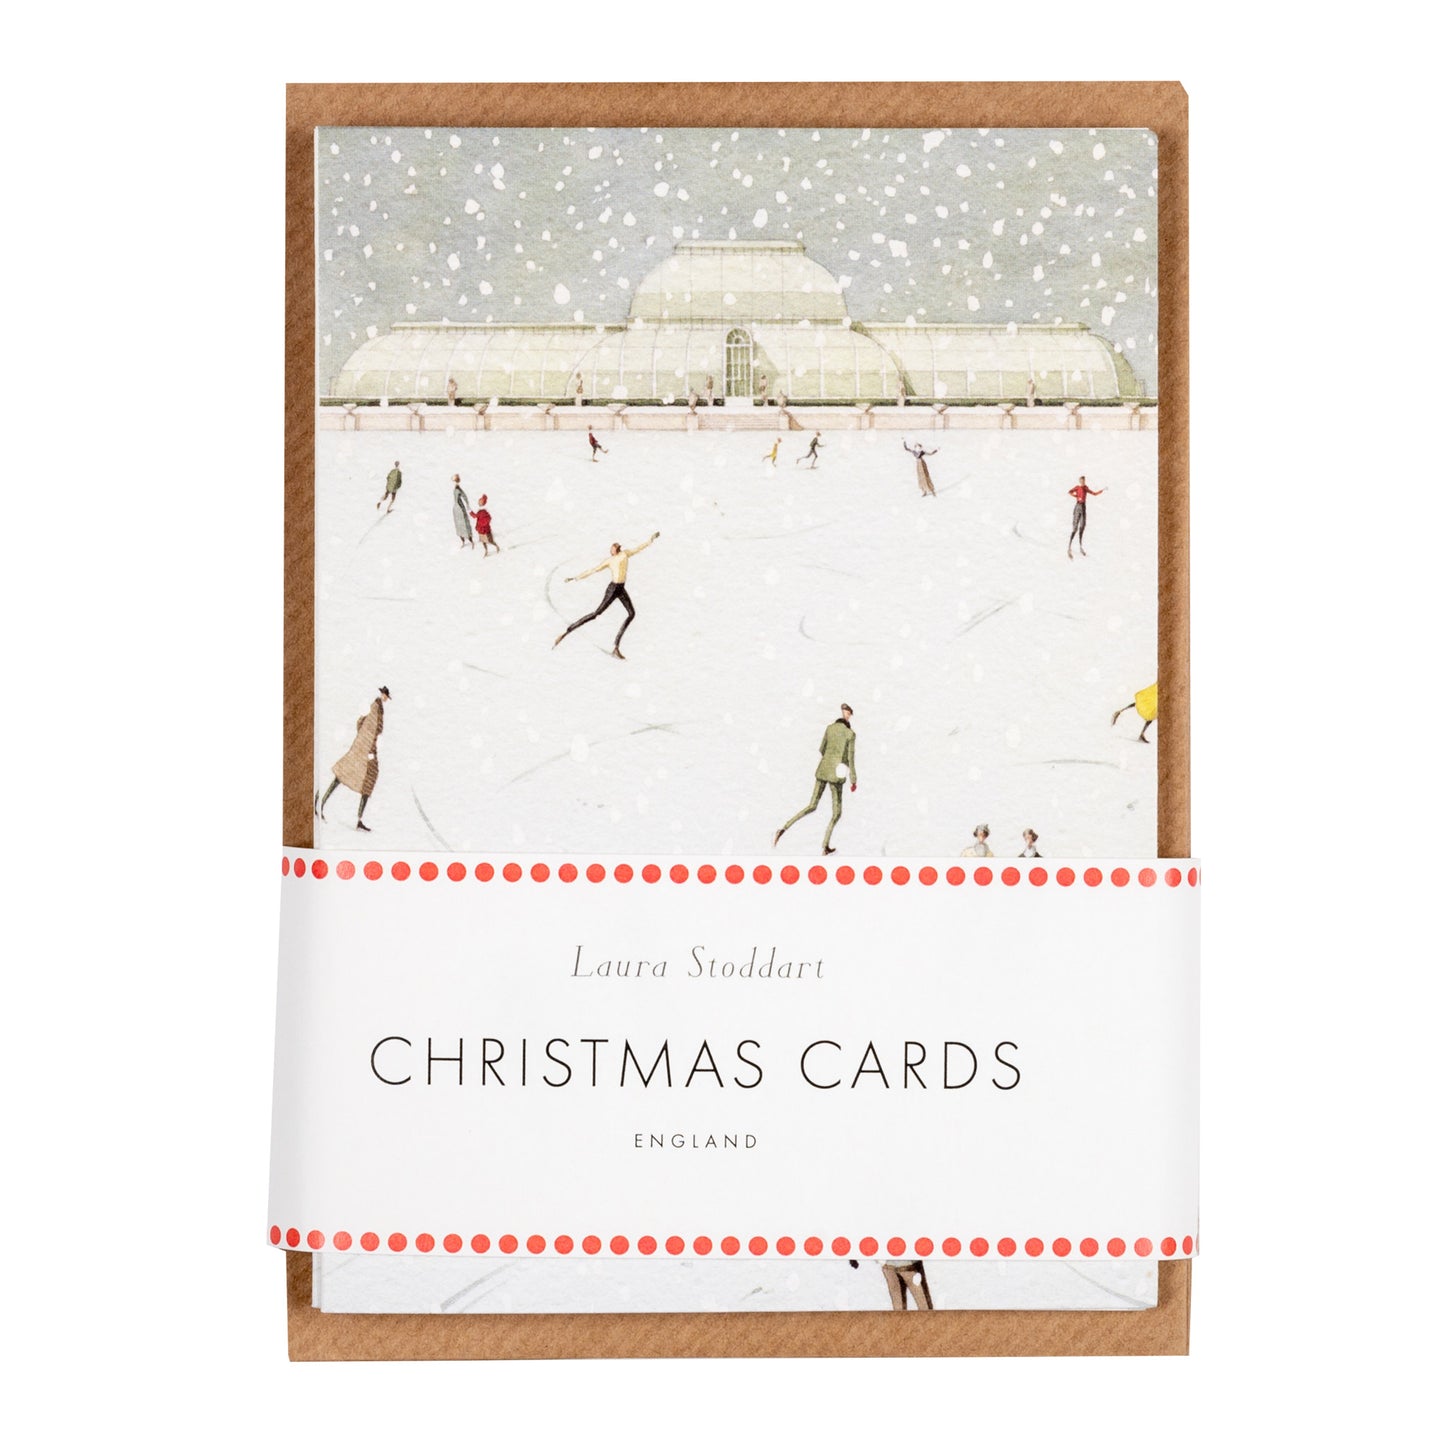 Christmas Cards Ten Pack - Skating at Kew